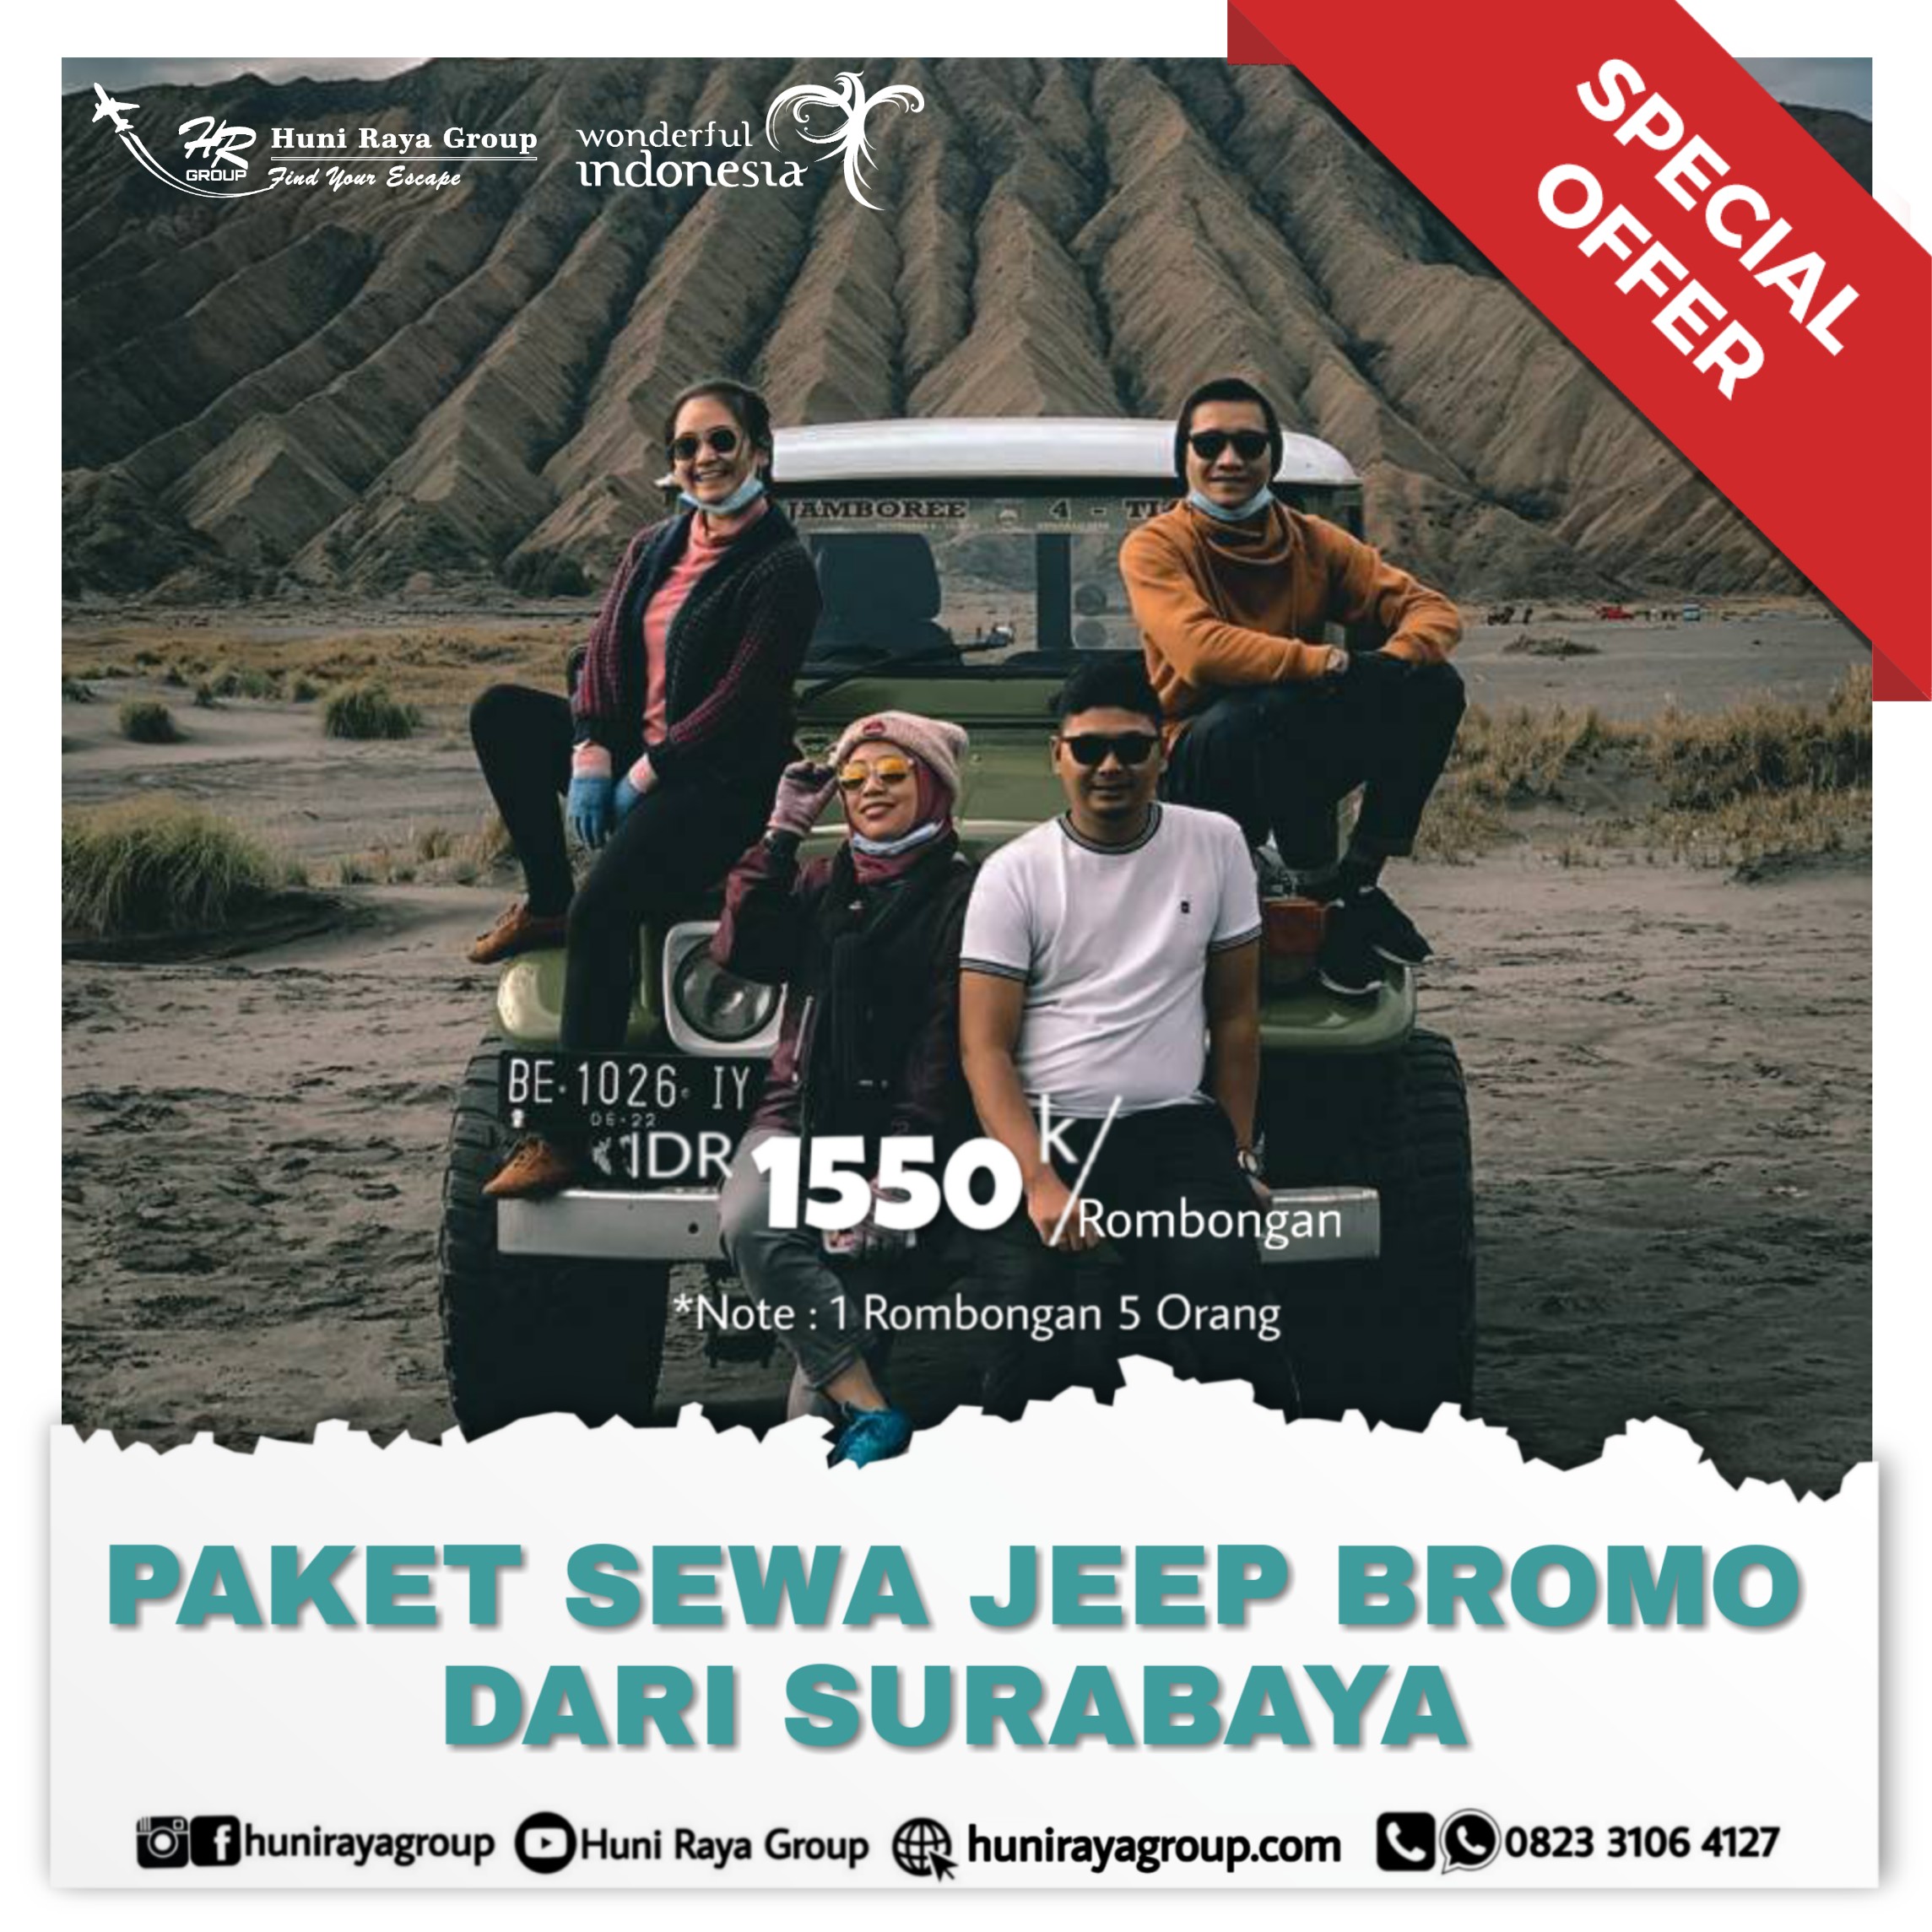 Paket Sewa Jeep Bromo dari Surabaya